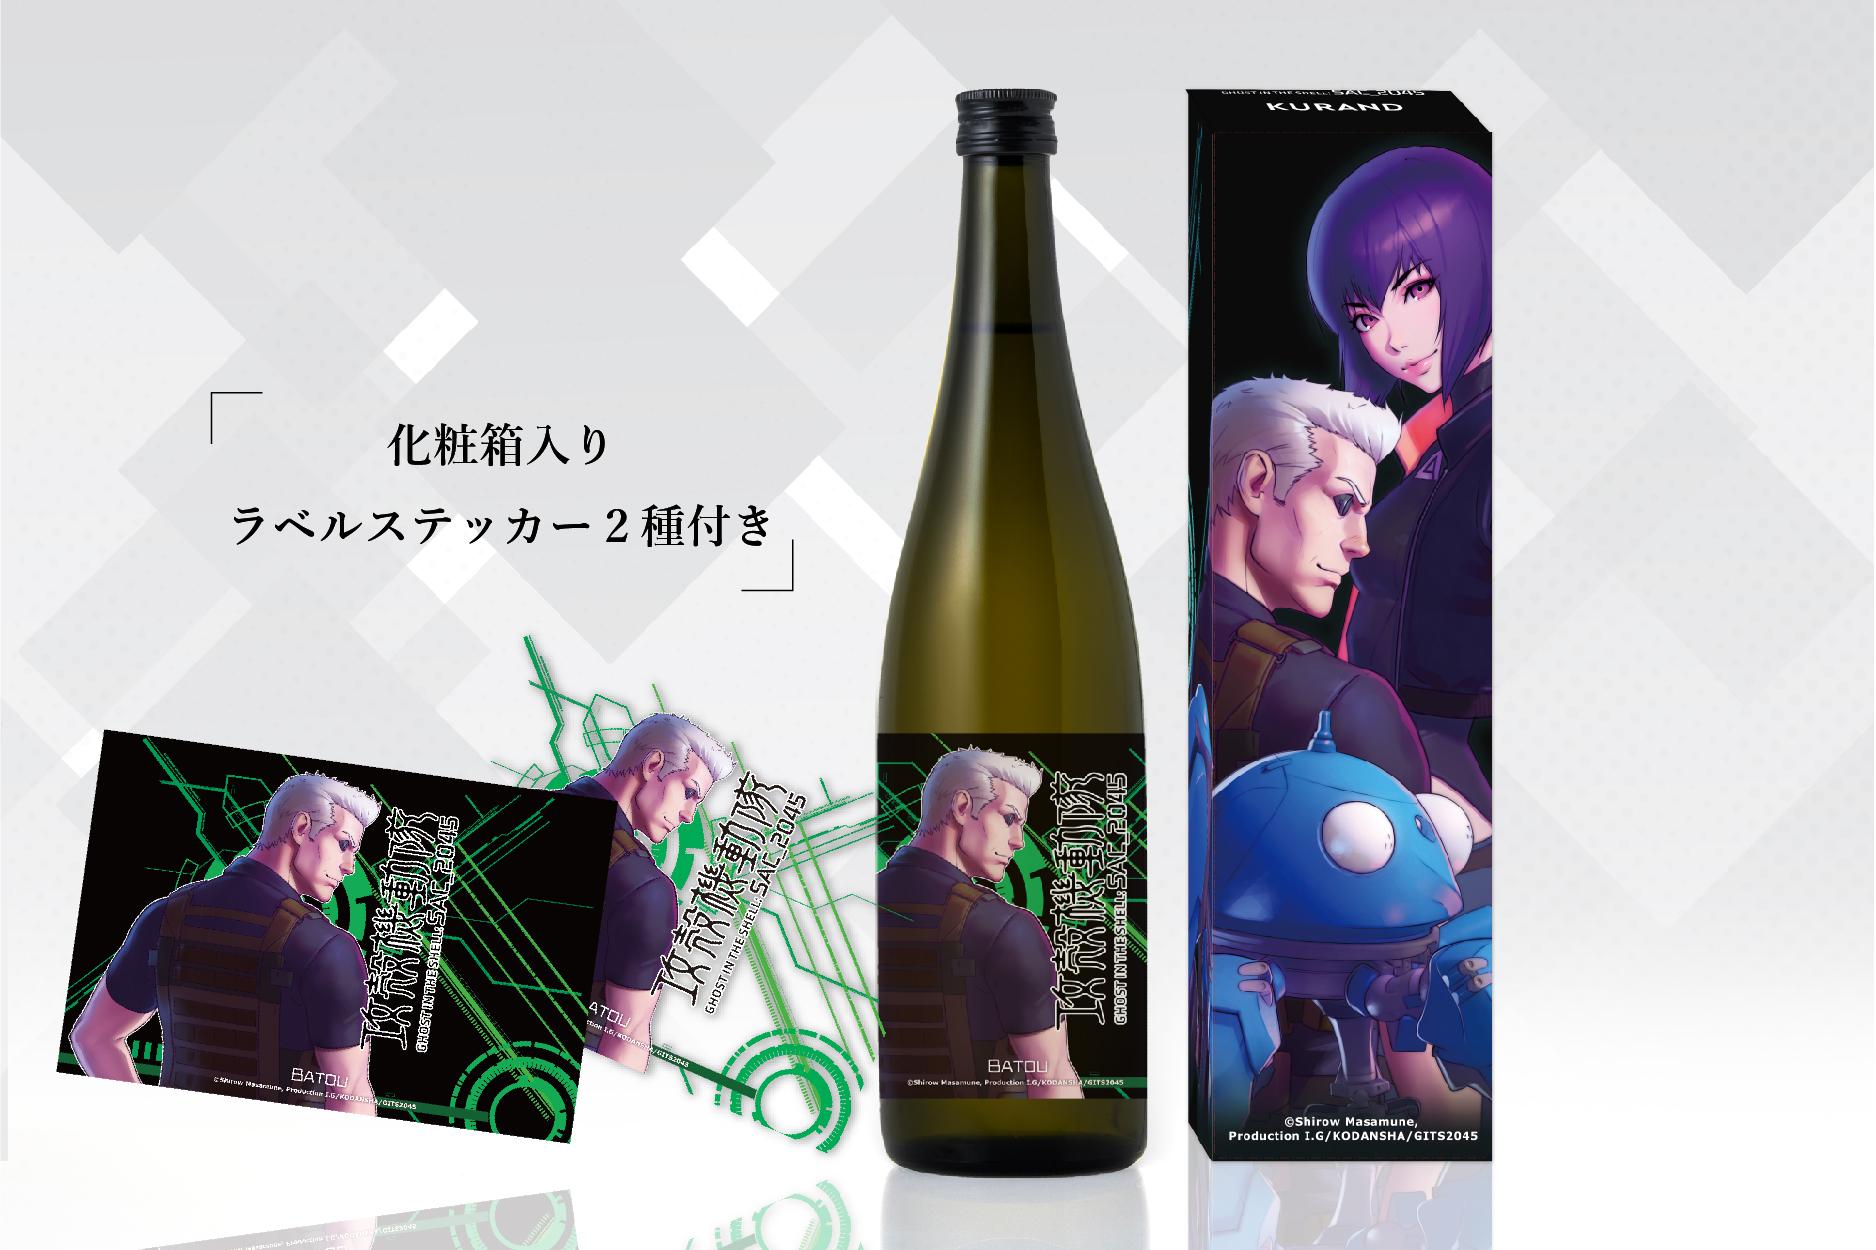 「攻殻機動隊 SAC_2045」オリジナルラベル日本酒 3/3からオンライン先行販売開始 ～テーマは「戦いの後の乾杯酒」～